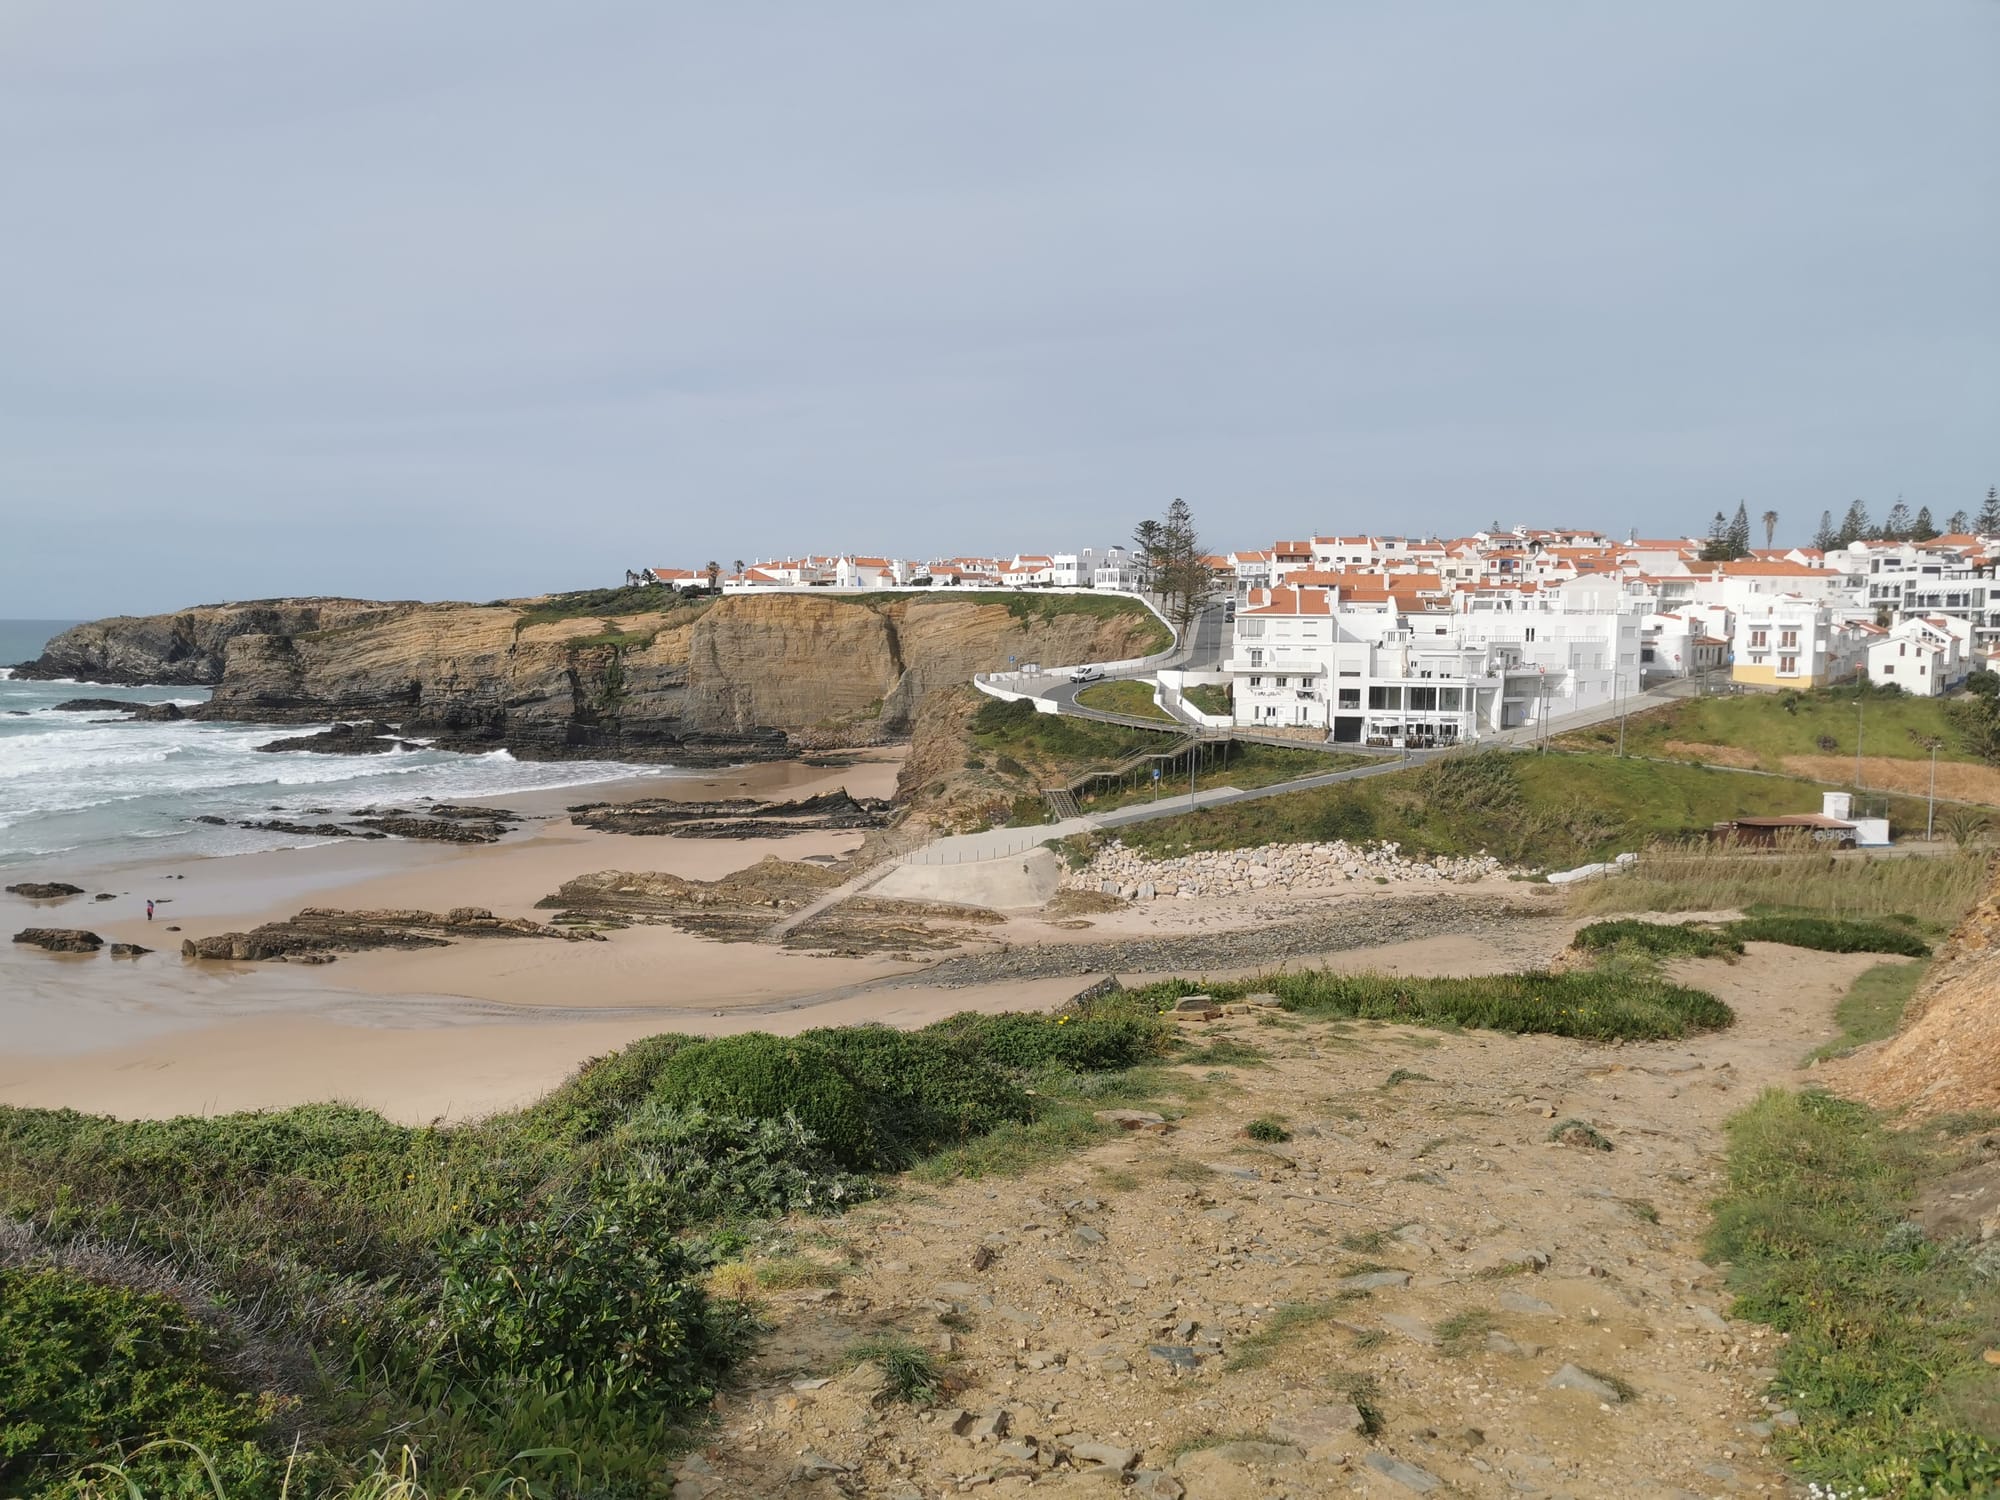 Der Fischerweg in Portugal: Fernwandern an der Atlantikküste